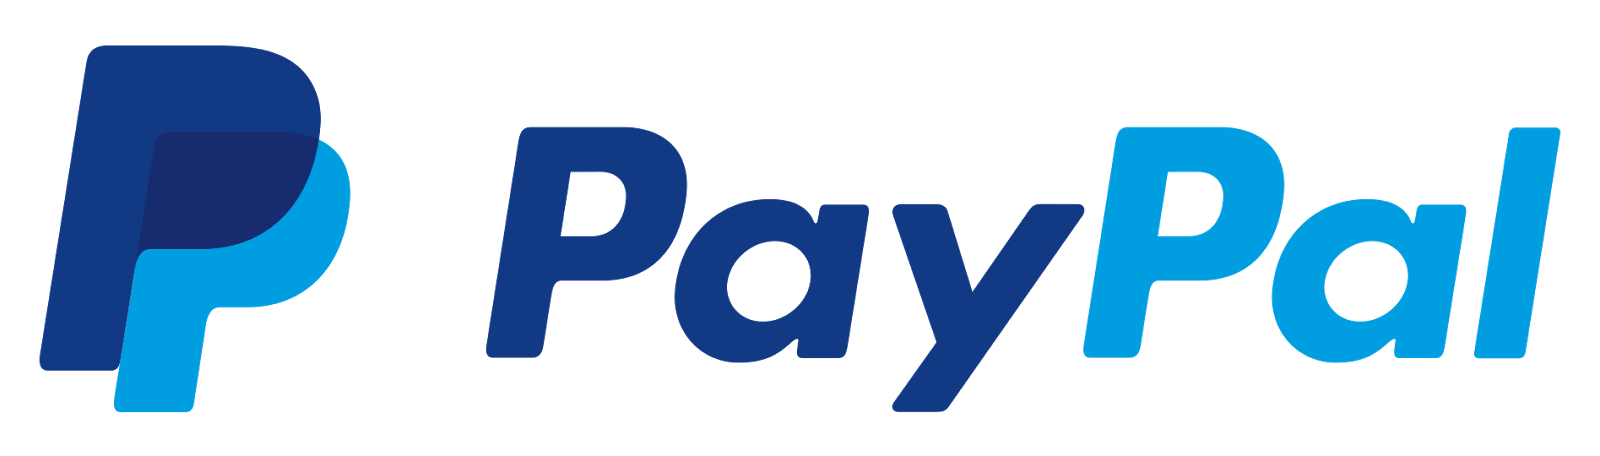 paypal_logo.png